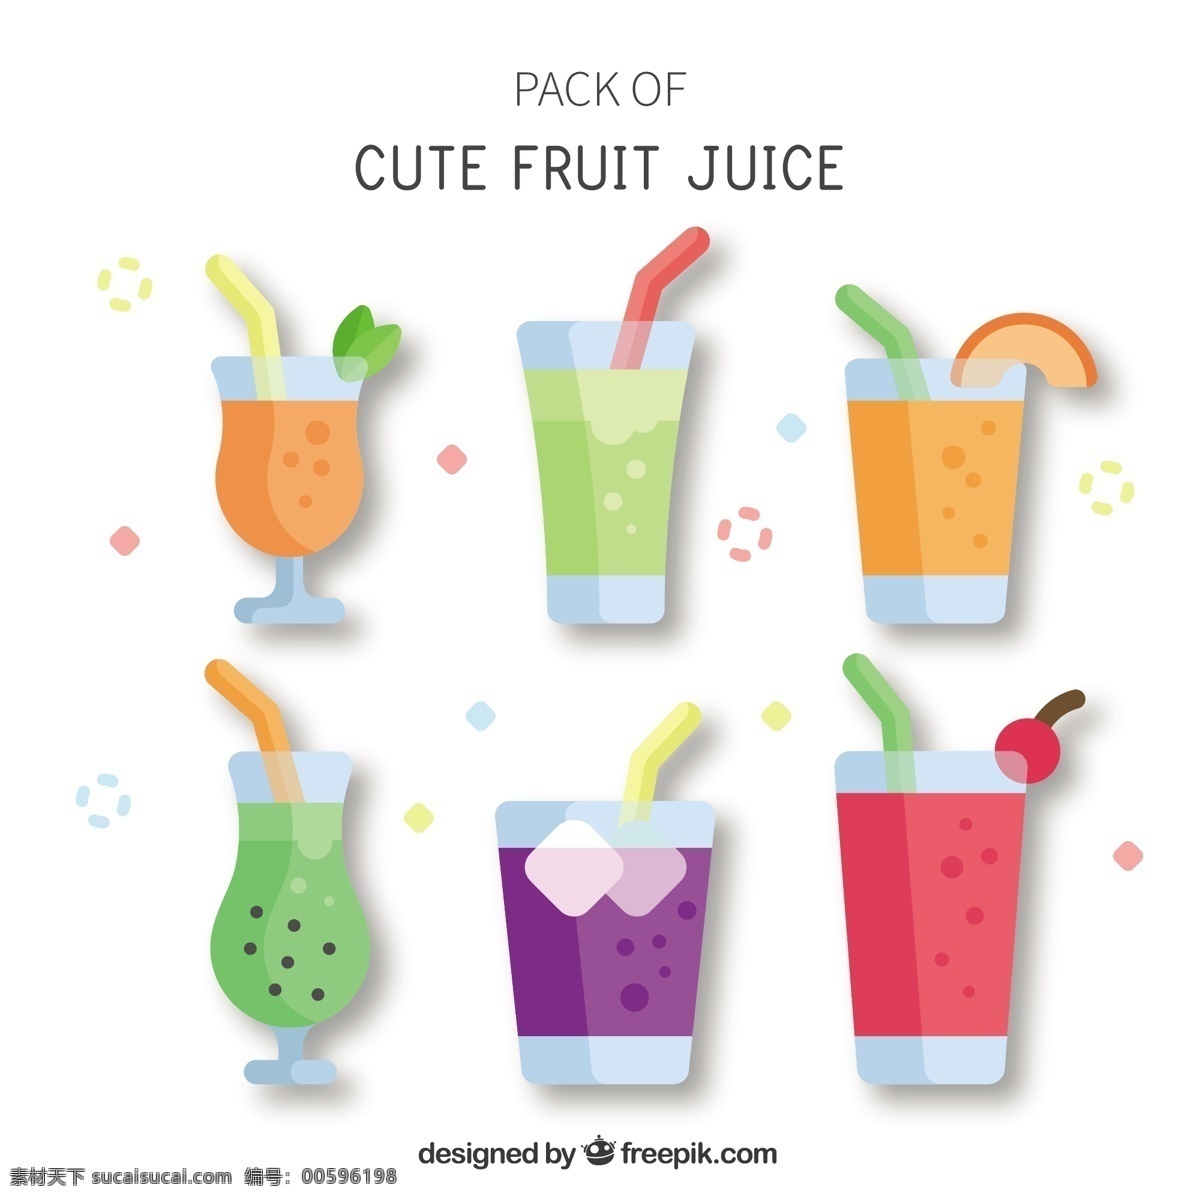 平面设计 中 果汁 包装 食品 夏季 水果 颜色 橙子 热带 平板 饮料 自然 健康 饮食 健康食品 营养 樱桃 吃